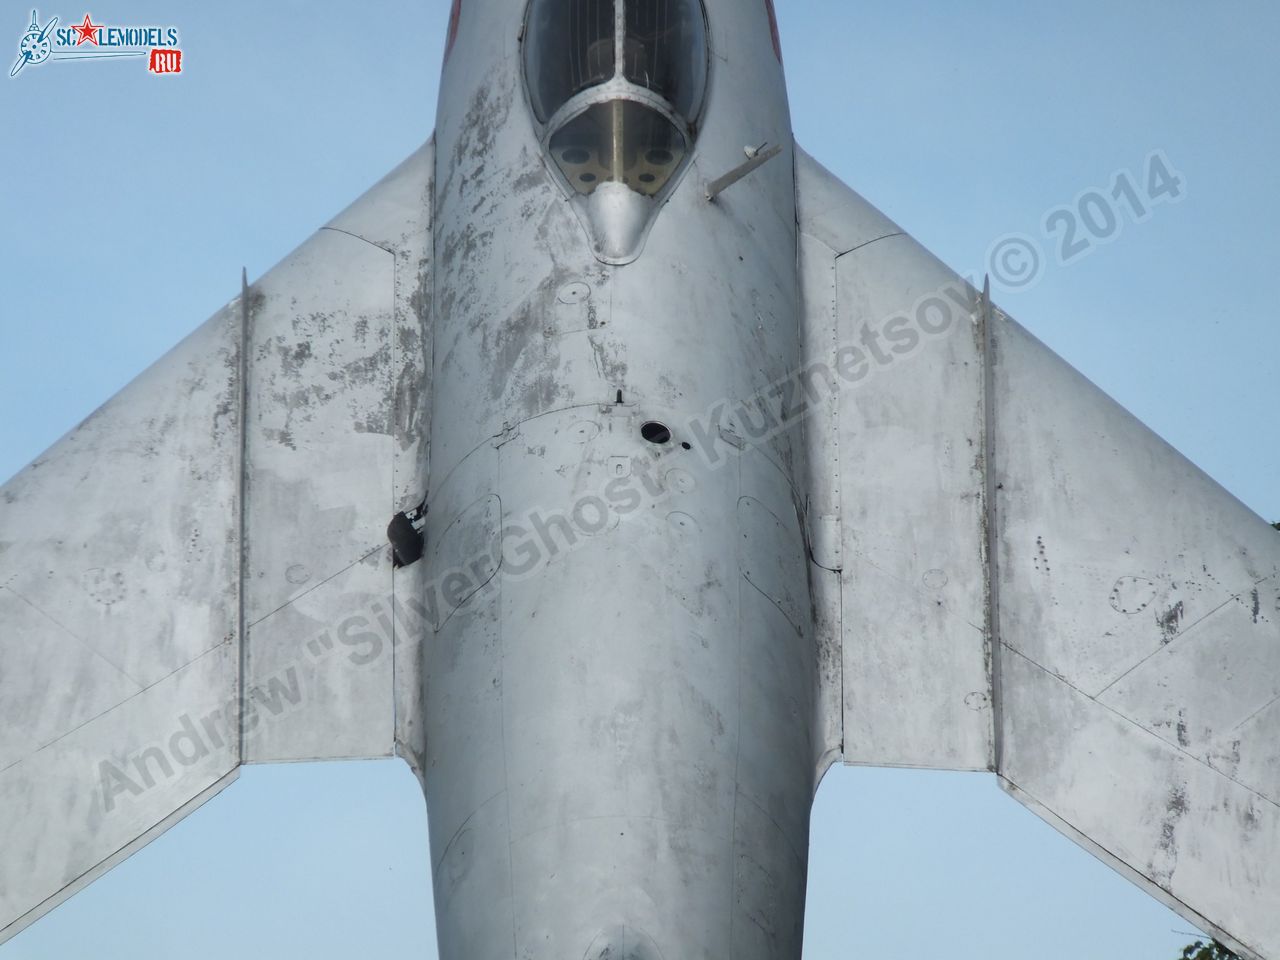 MiG-17_0004.jpg